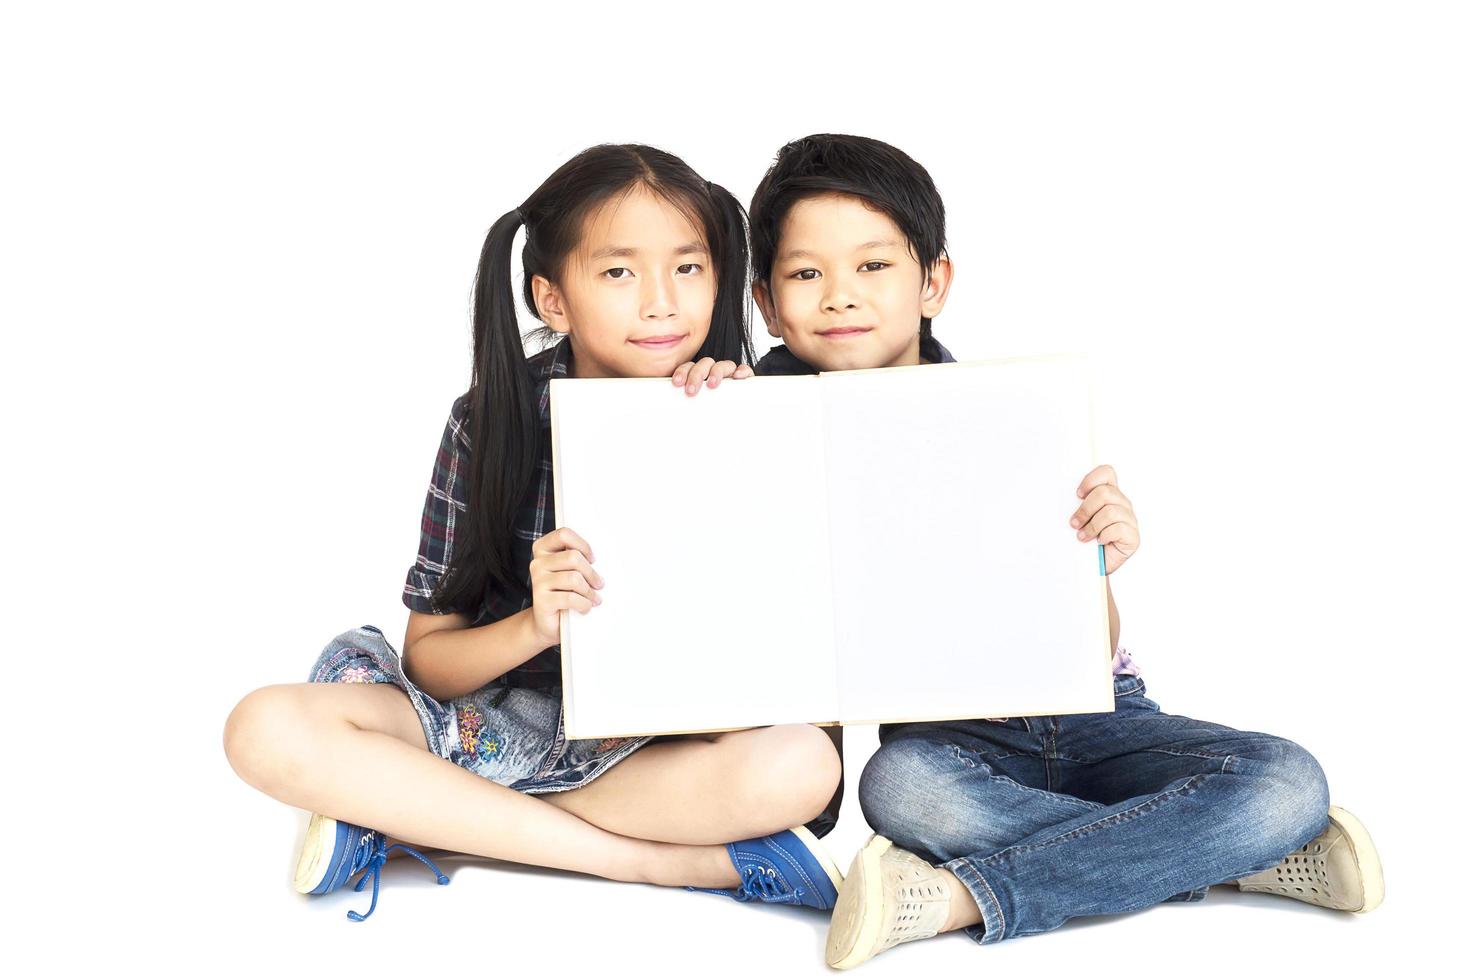 10 et 7 ans écolière et garçon asiatiques montrant joyeusement un livre blanc vide isolé sur blanc photo